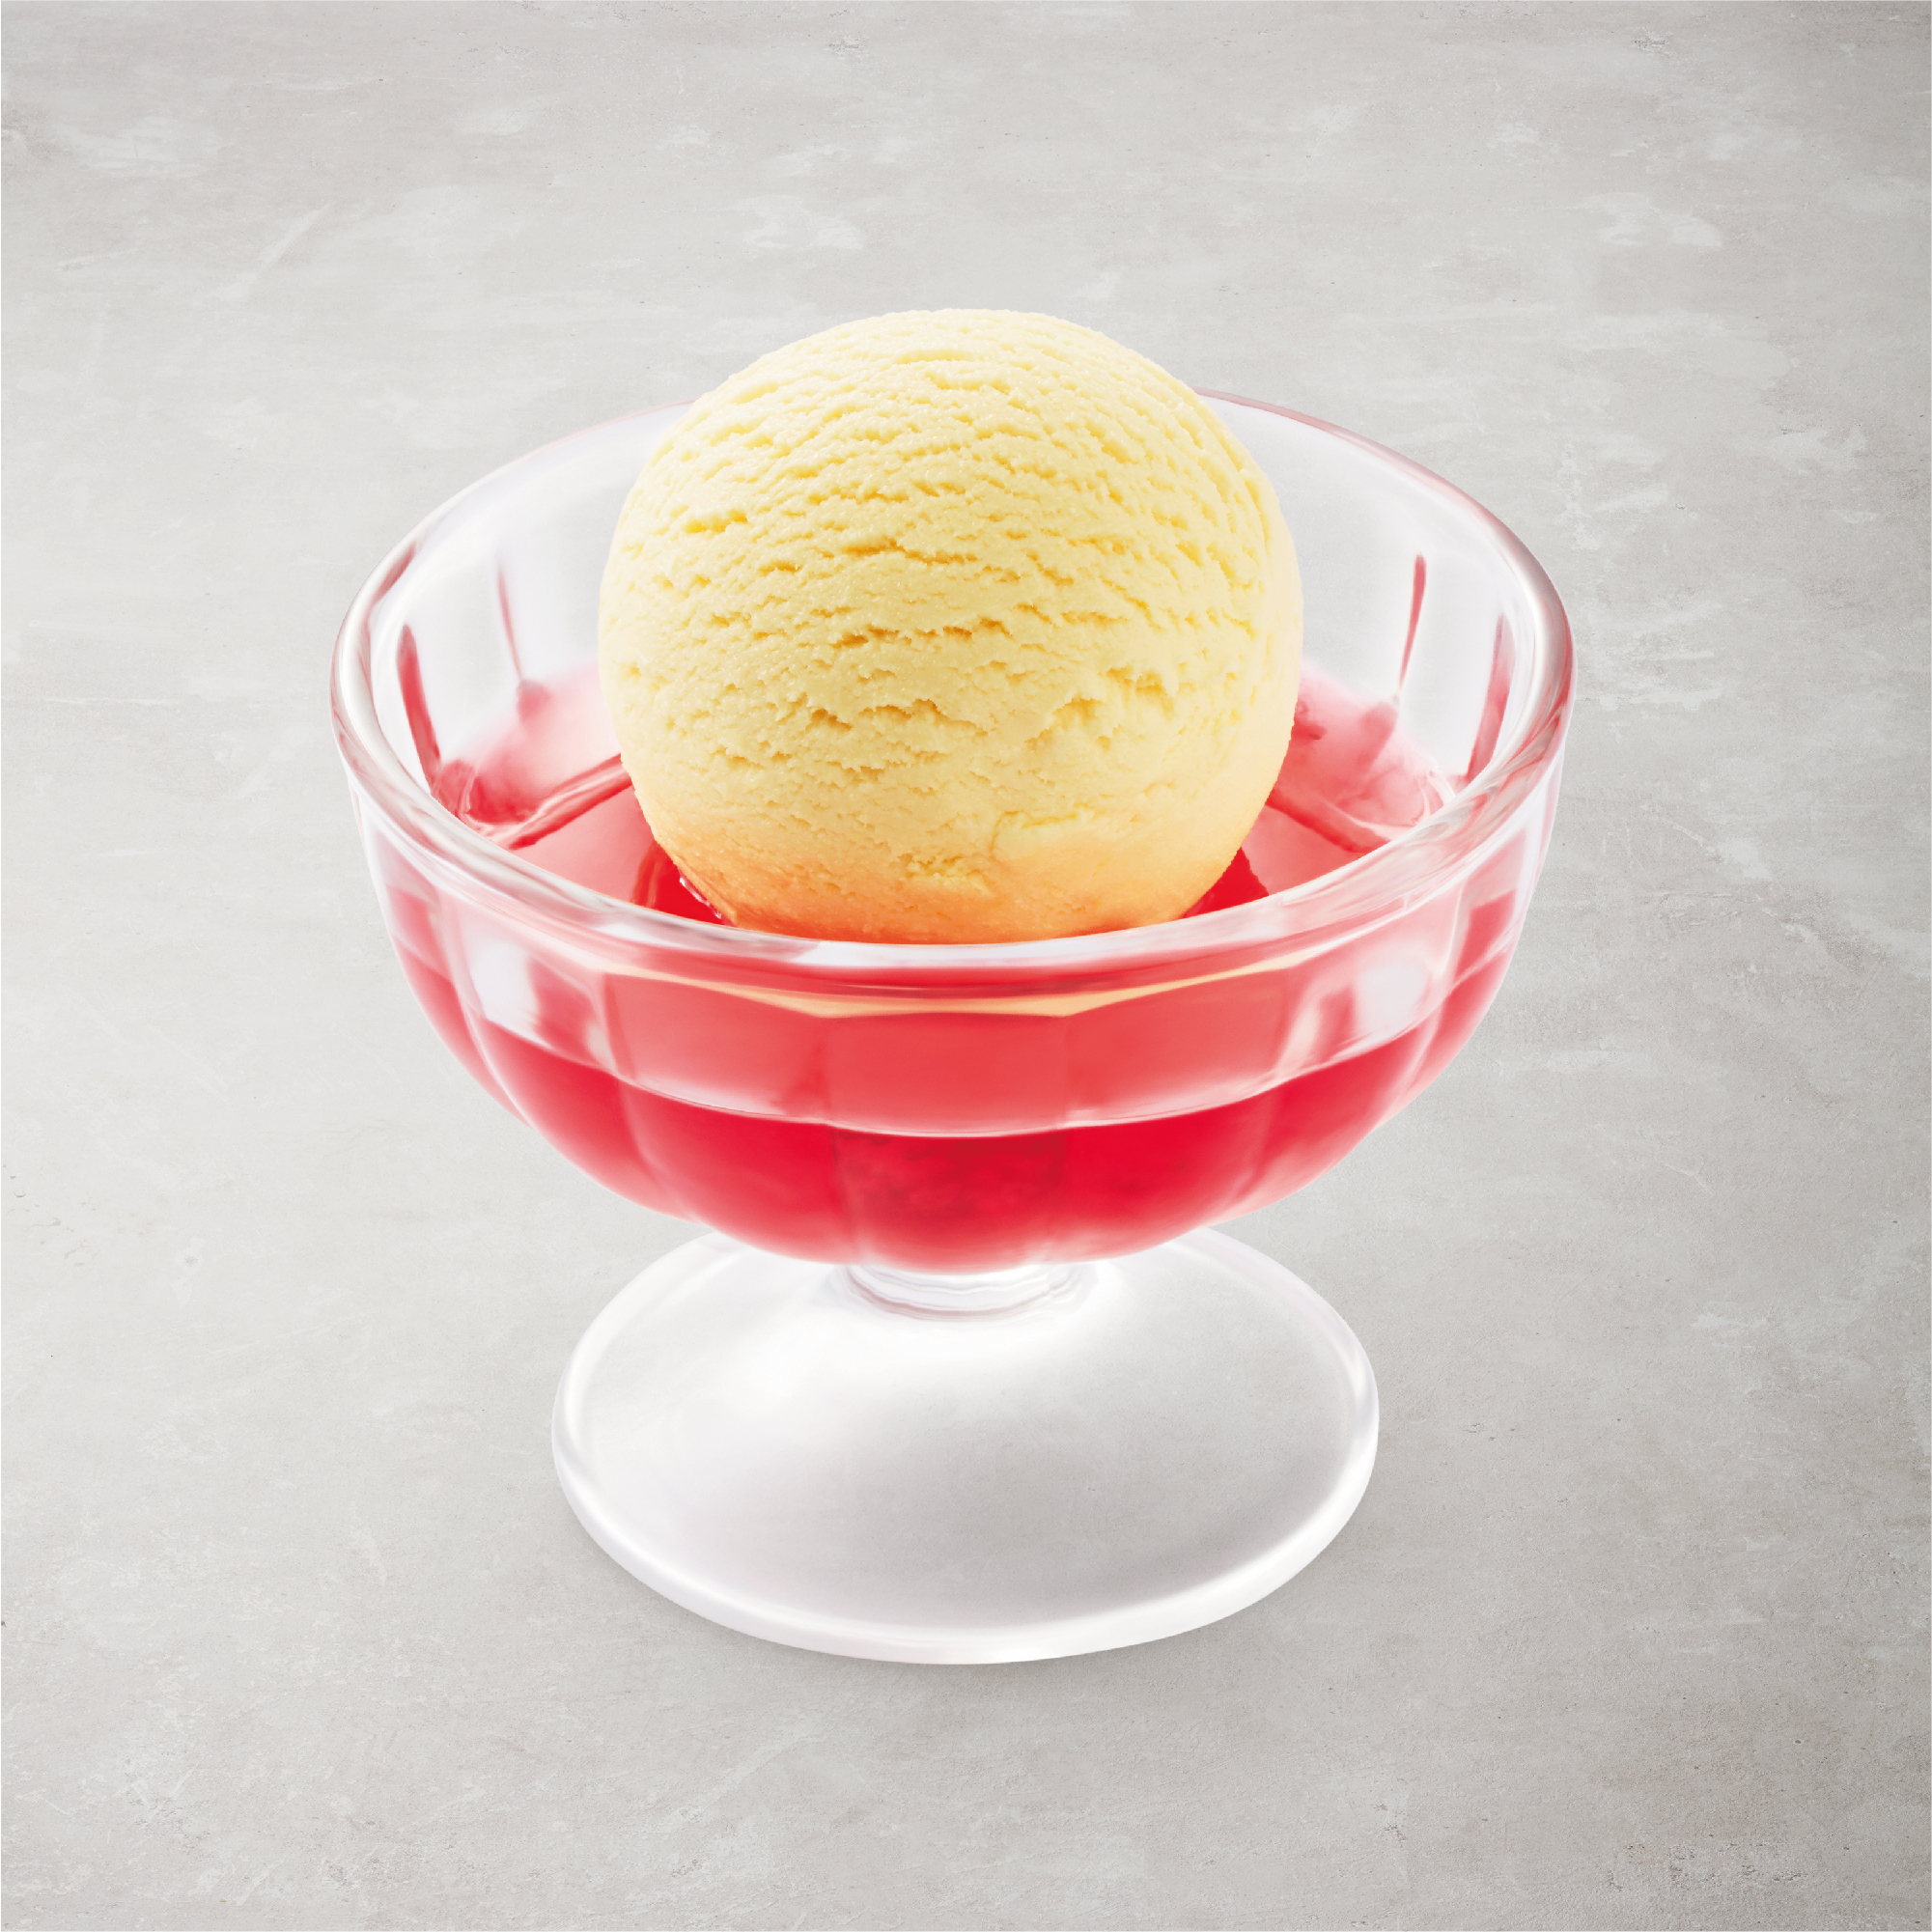 Vanilla Ice Cream with Jelly